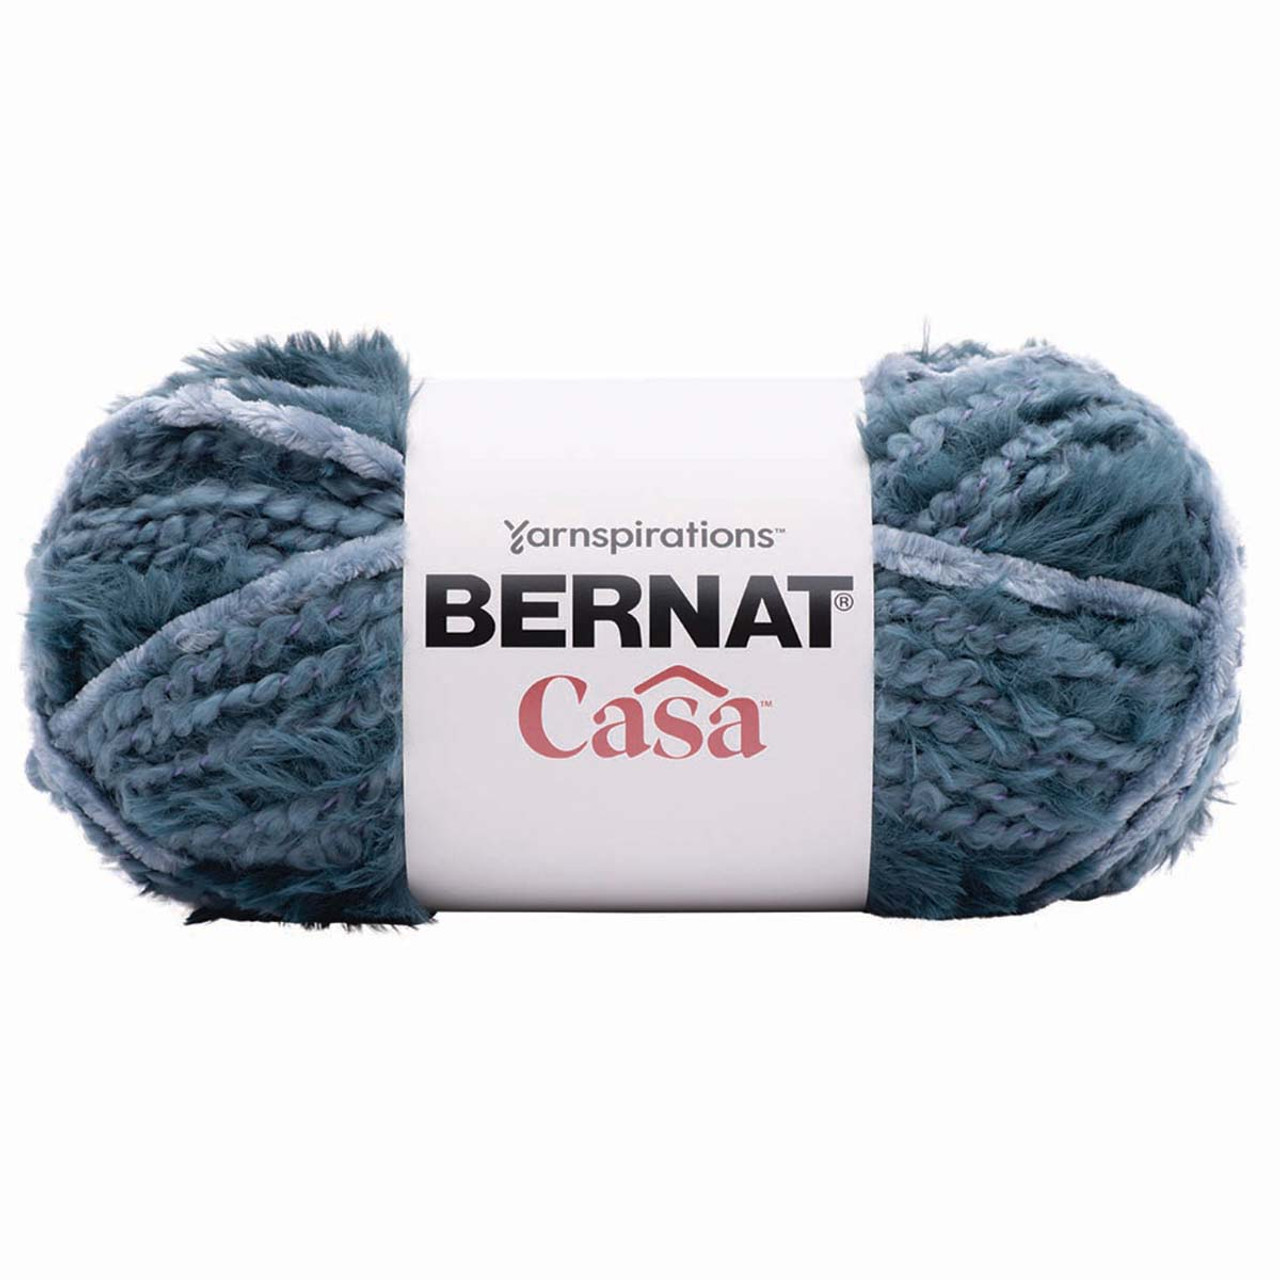 Bernat Yarnspirations Thick Blanket Yarn-Vintage White